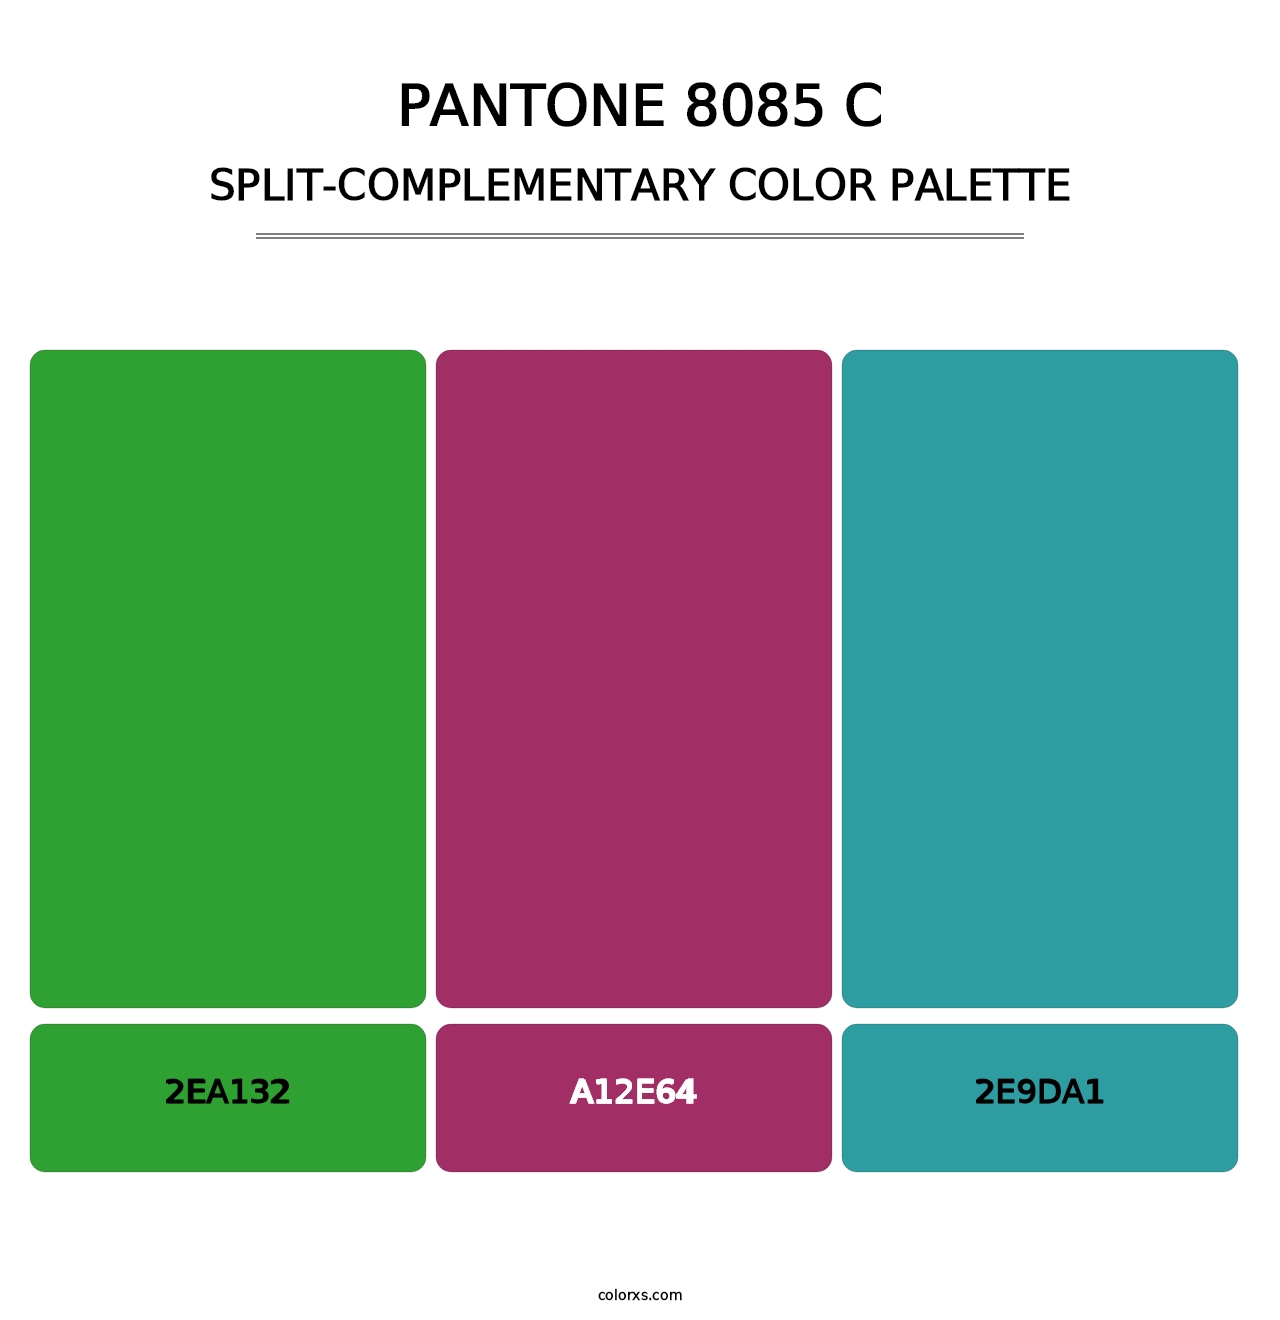 PANTONE 8085 C - Split-Complementary Color Palette